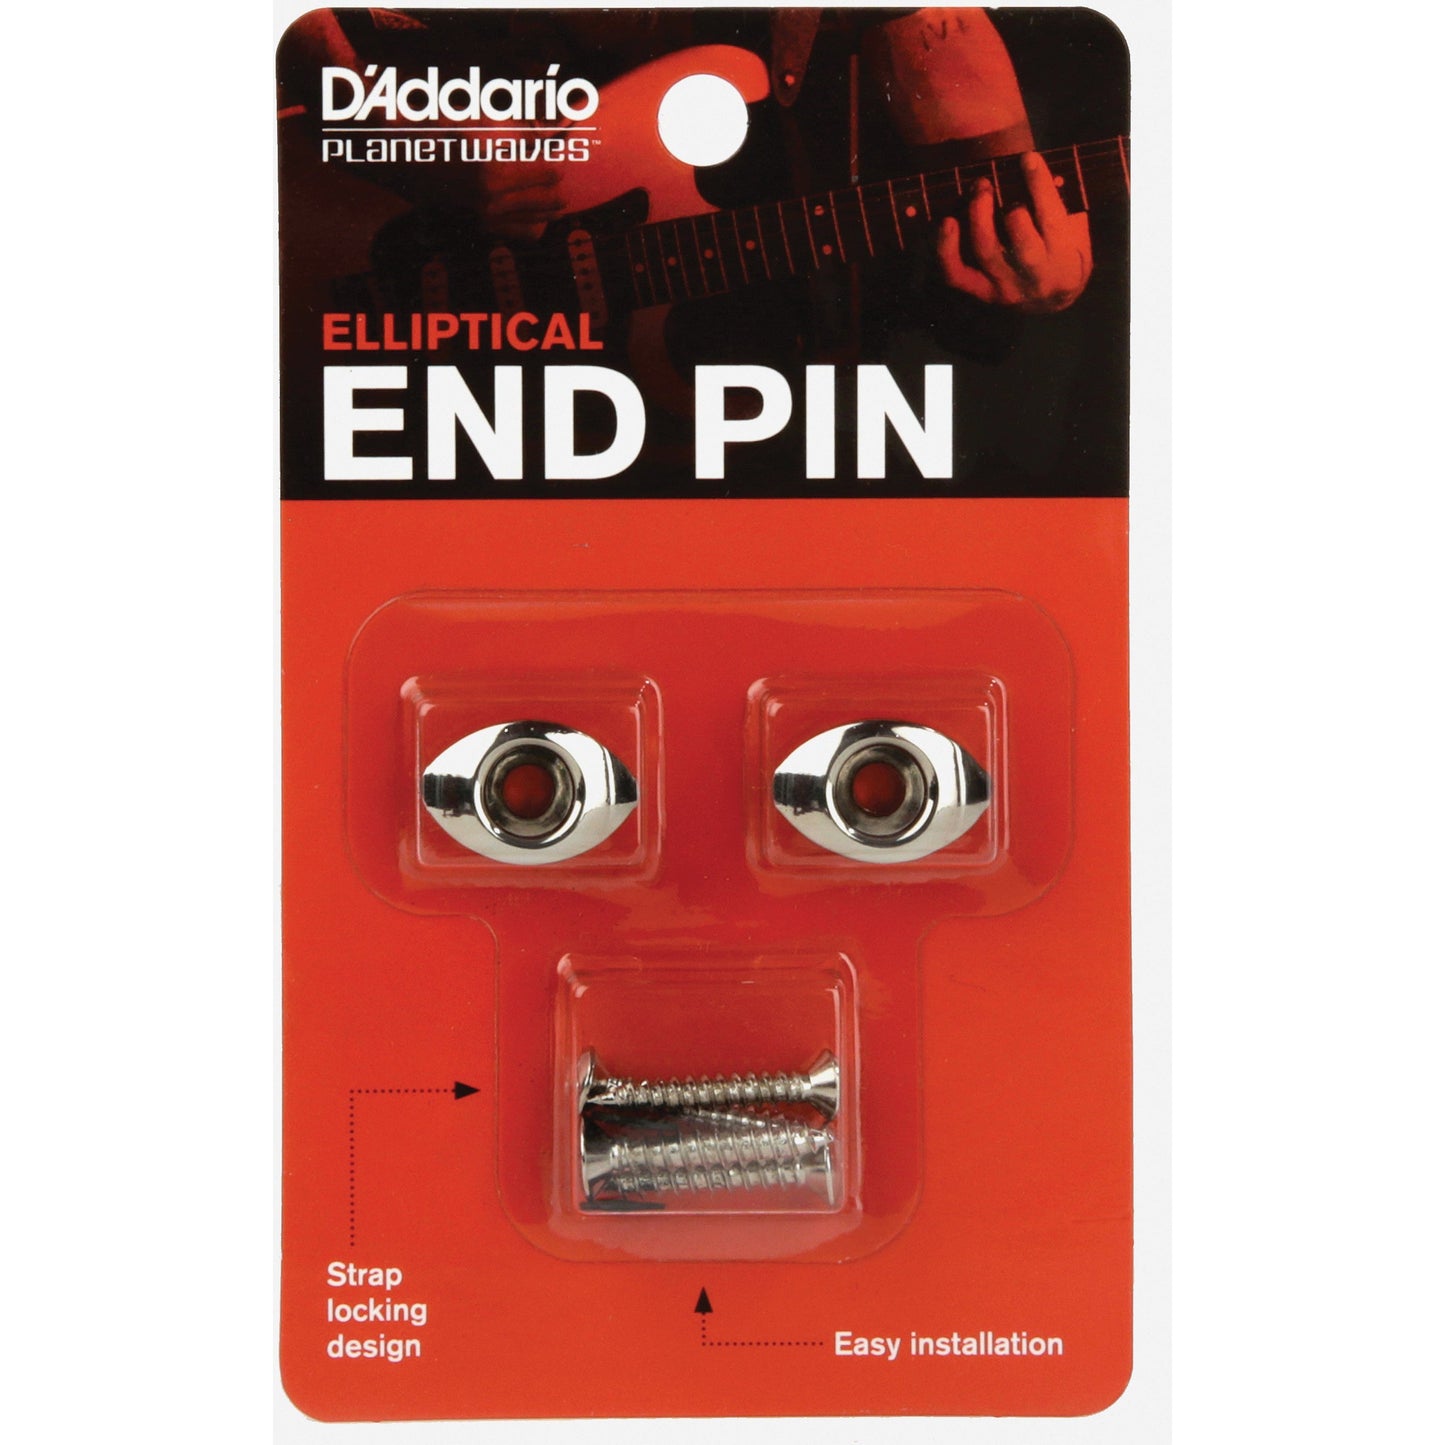 D'Addario Elliptical End Pins, Chrome